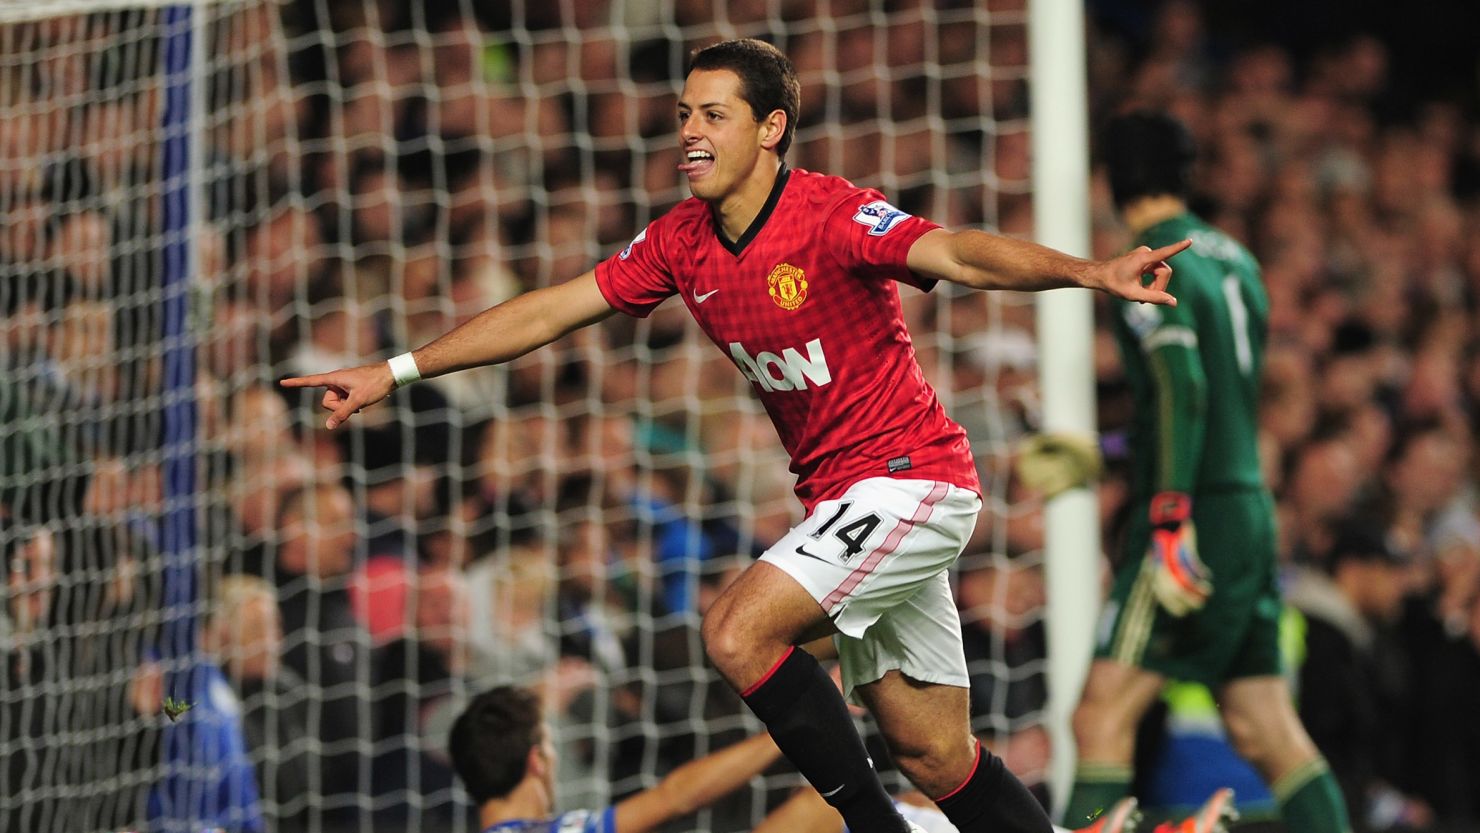 Javier Hernandez  celebrates scoring the winner for Manchester United against Chelsea at Stamford Bridge.